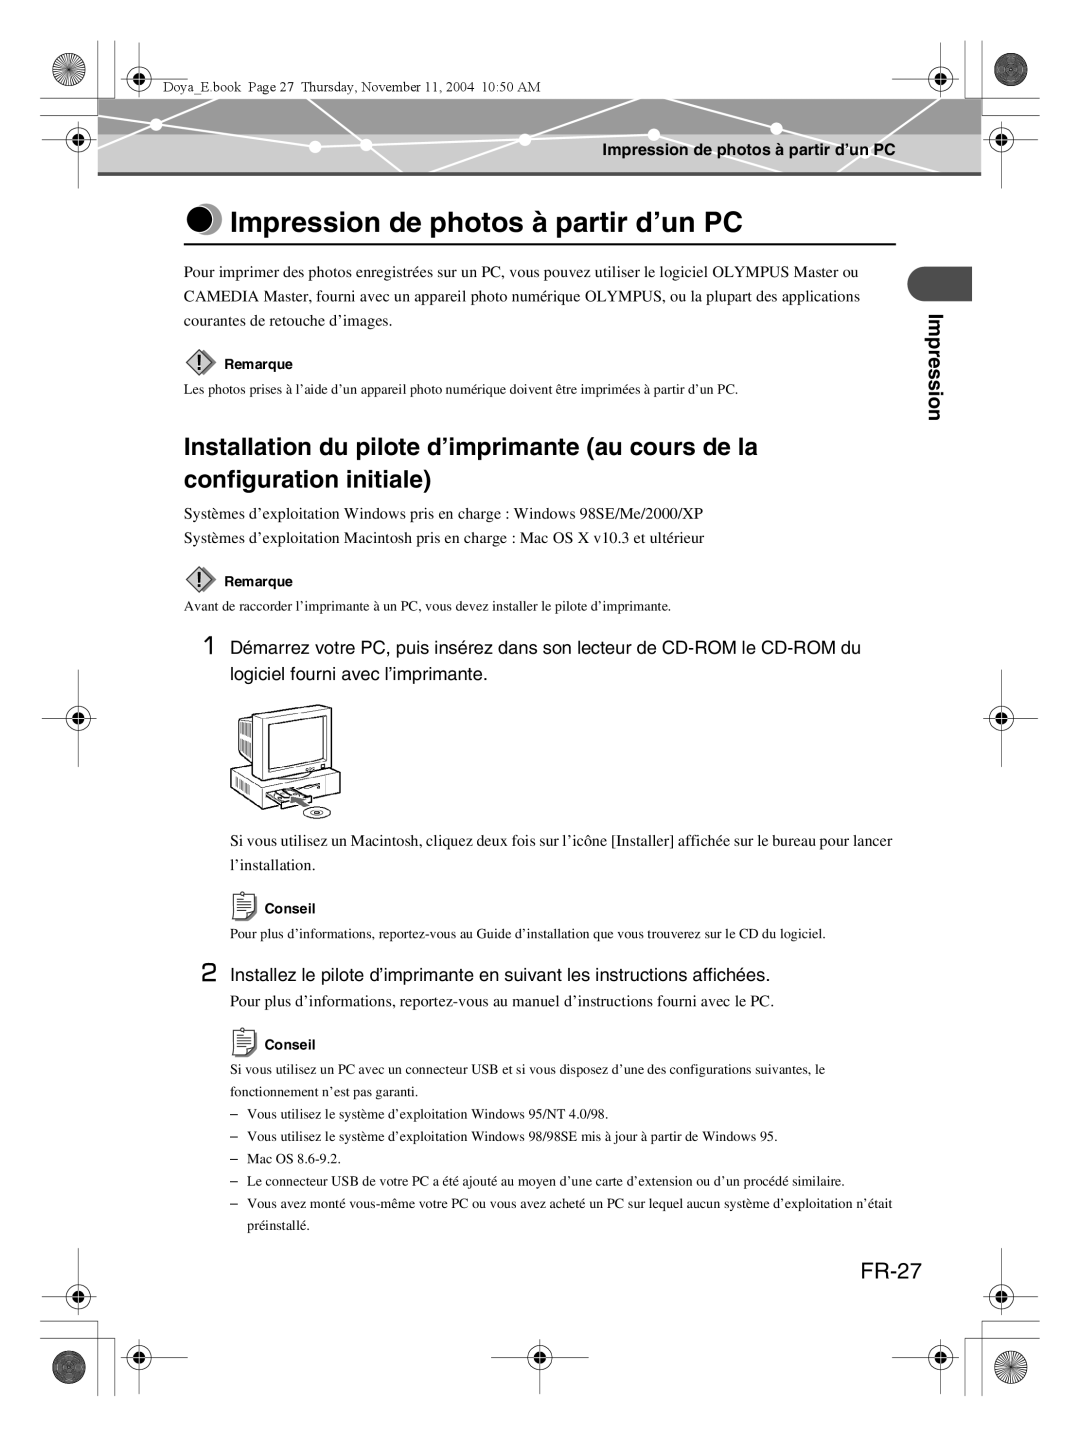 Olympus P-S100 user manual Impression de photos à partir d’un PC, FR-27 